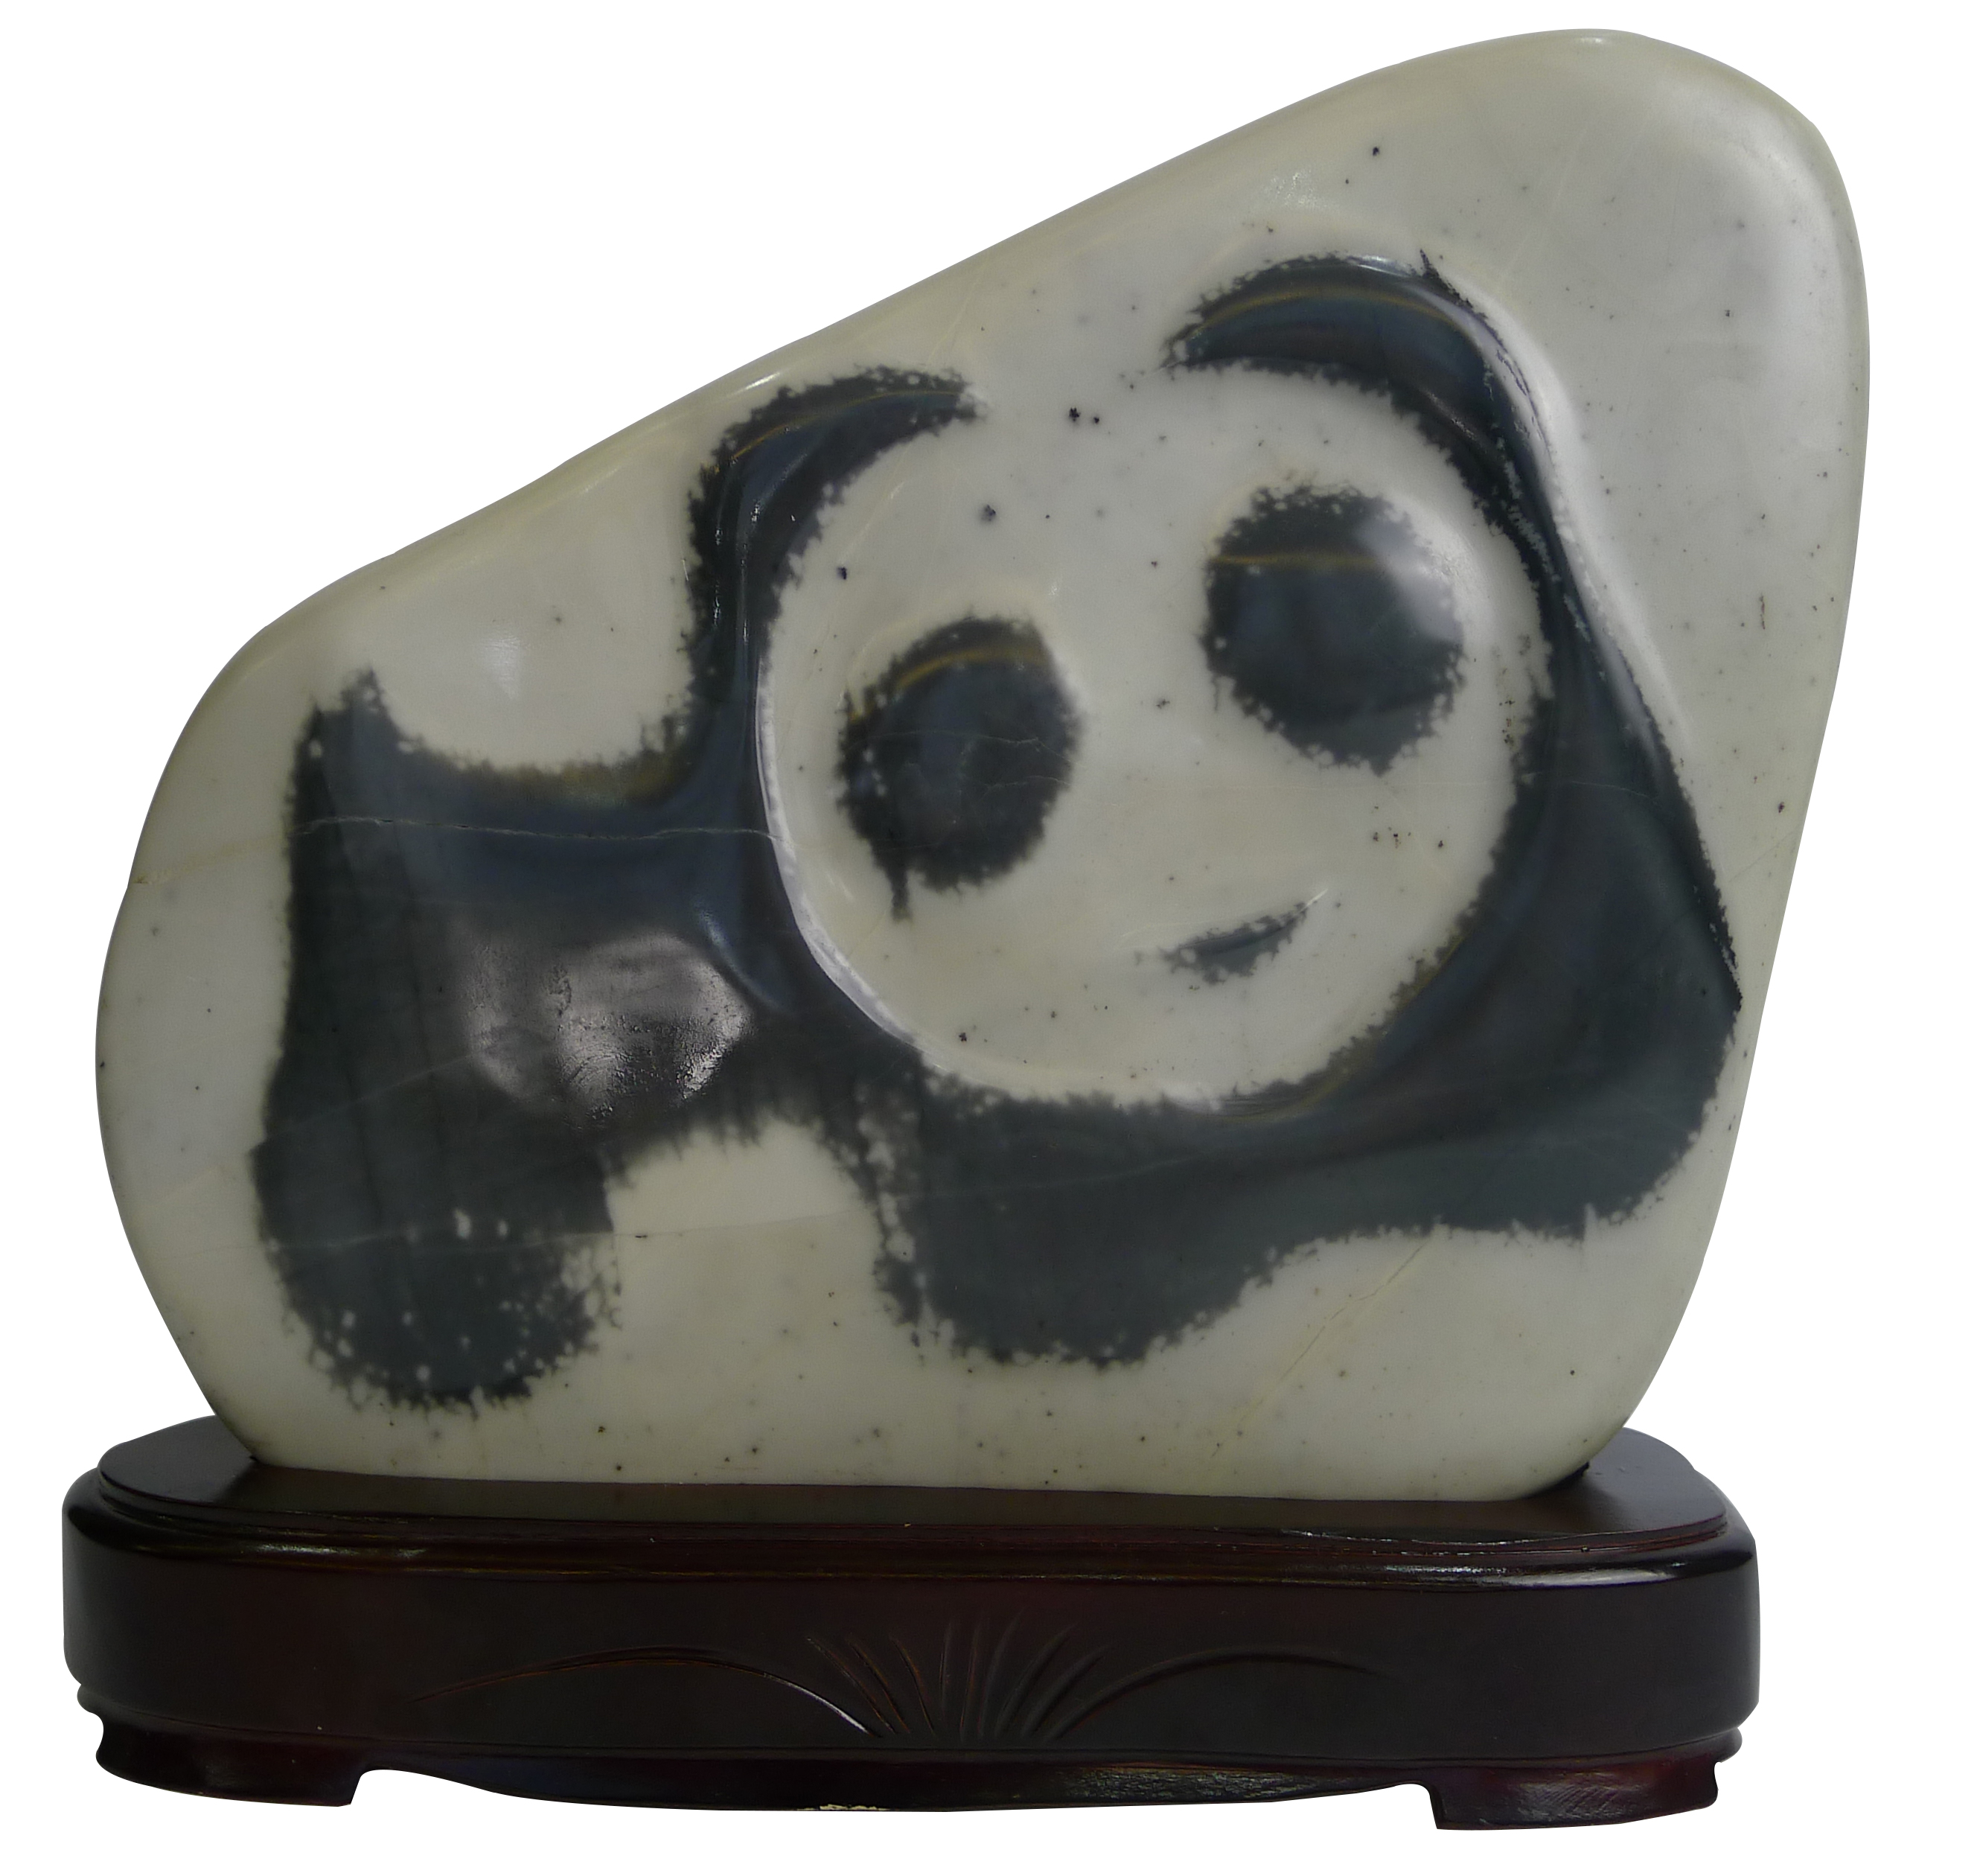 在乐山工作的洛阳人得一奇石《熊猫》 图 - 华夏奇石网 - 洛阳市赏石协会官方网站